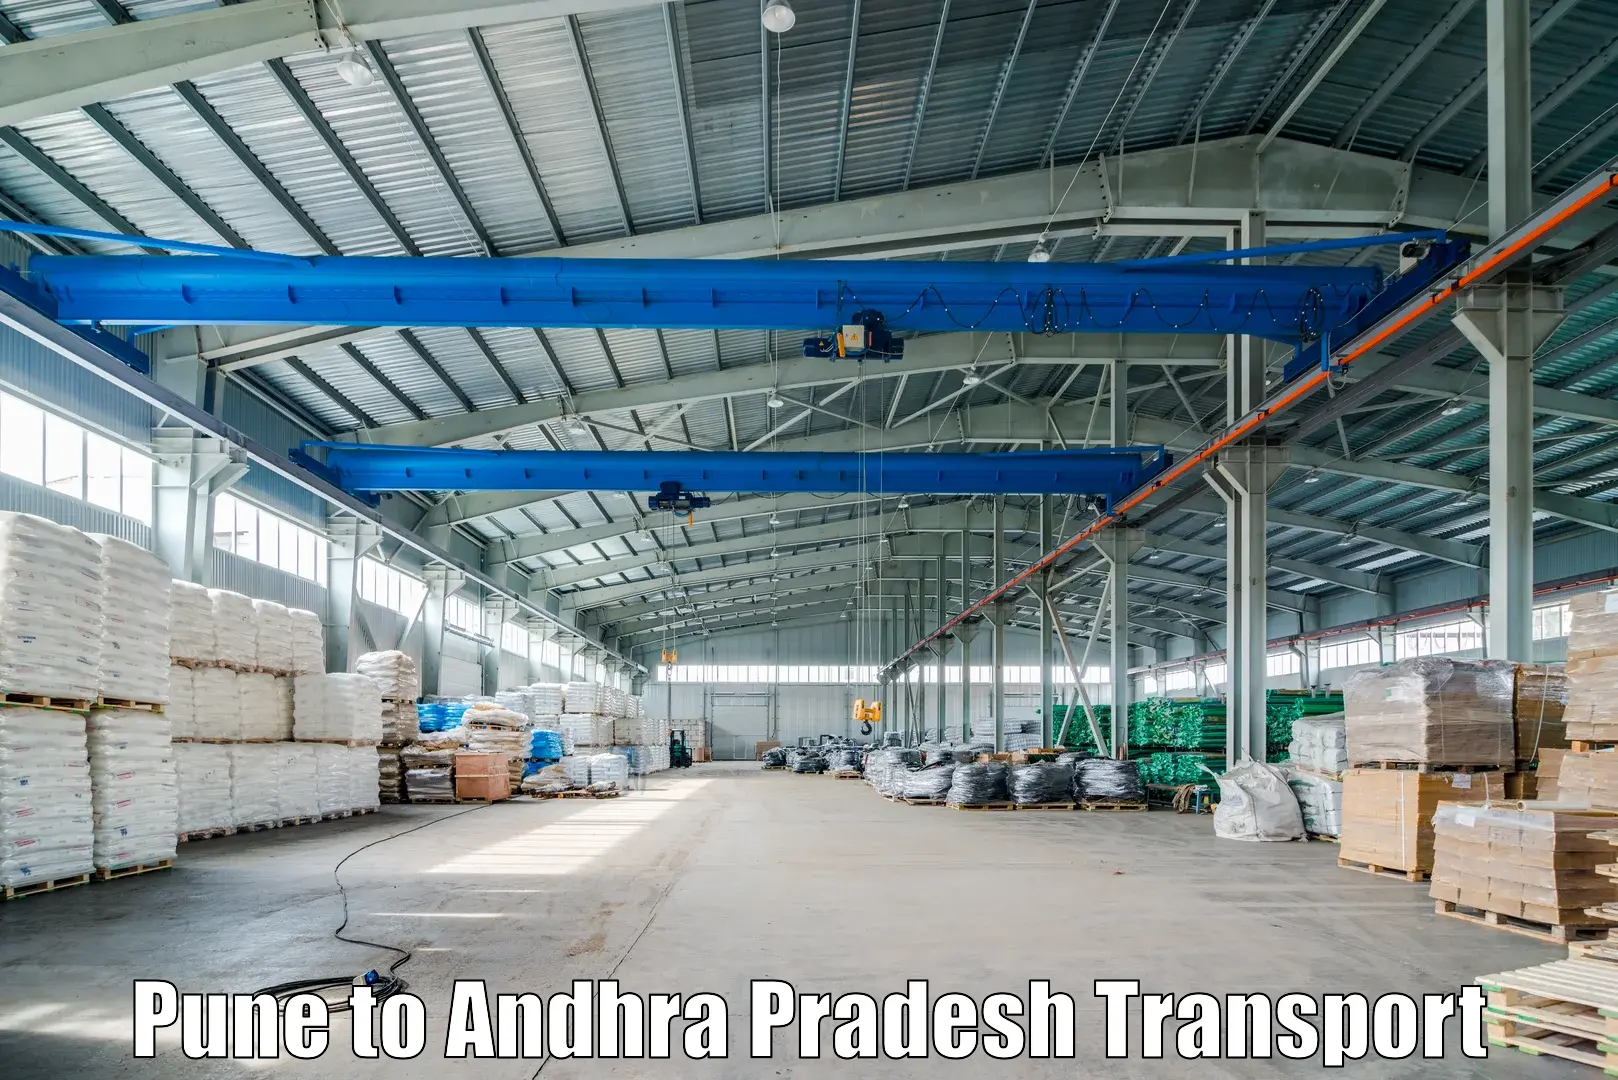 Parcel transport services Pune to Alur